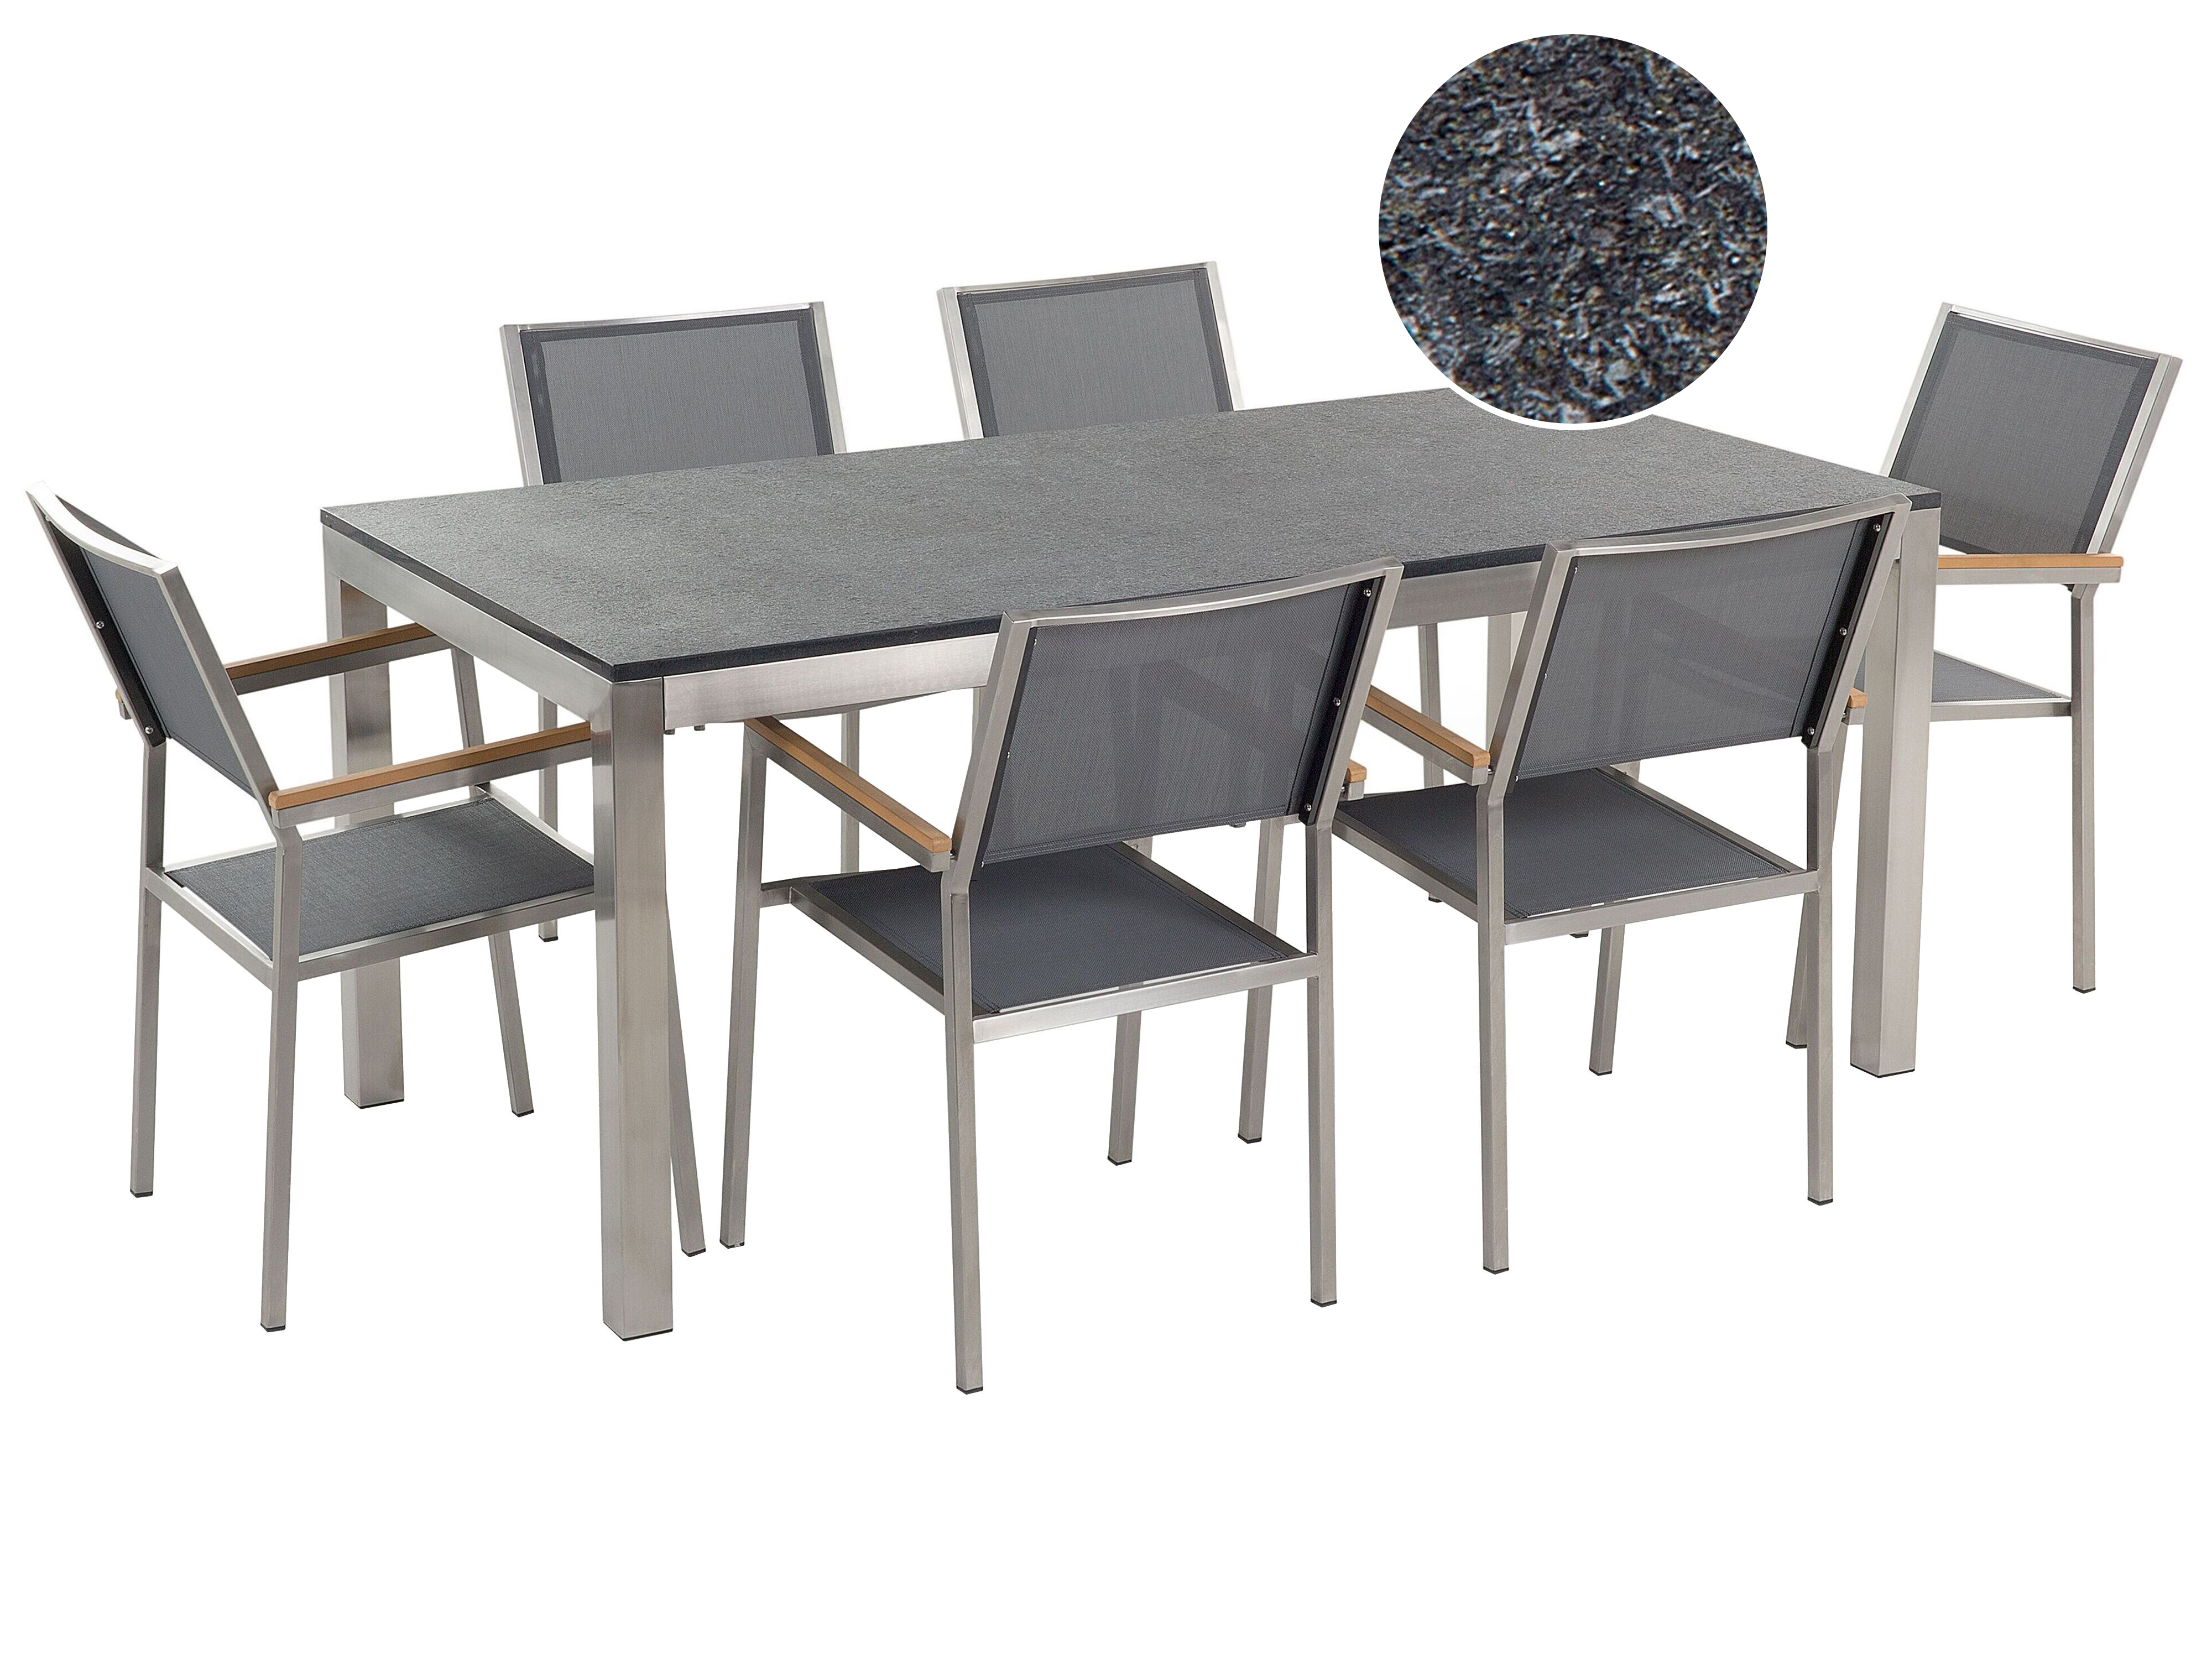 Conjunto de jardín mesa con tablero de piedra natural pulida negra 180 cm, 6 sillas de tela gris GROSSETO_435199